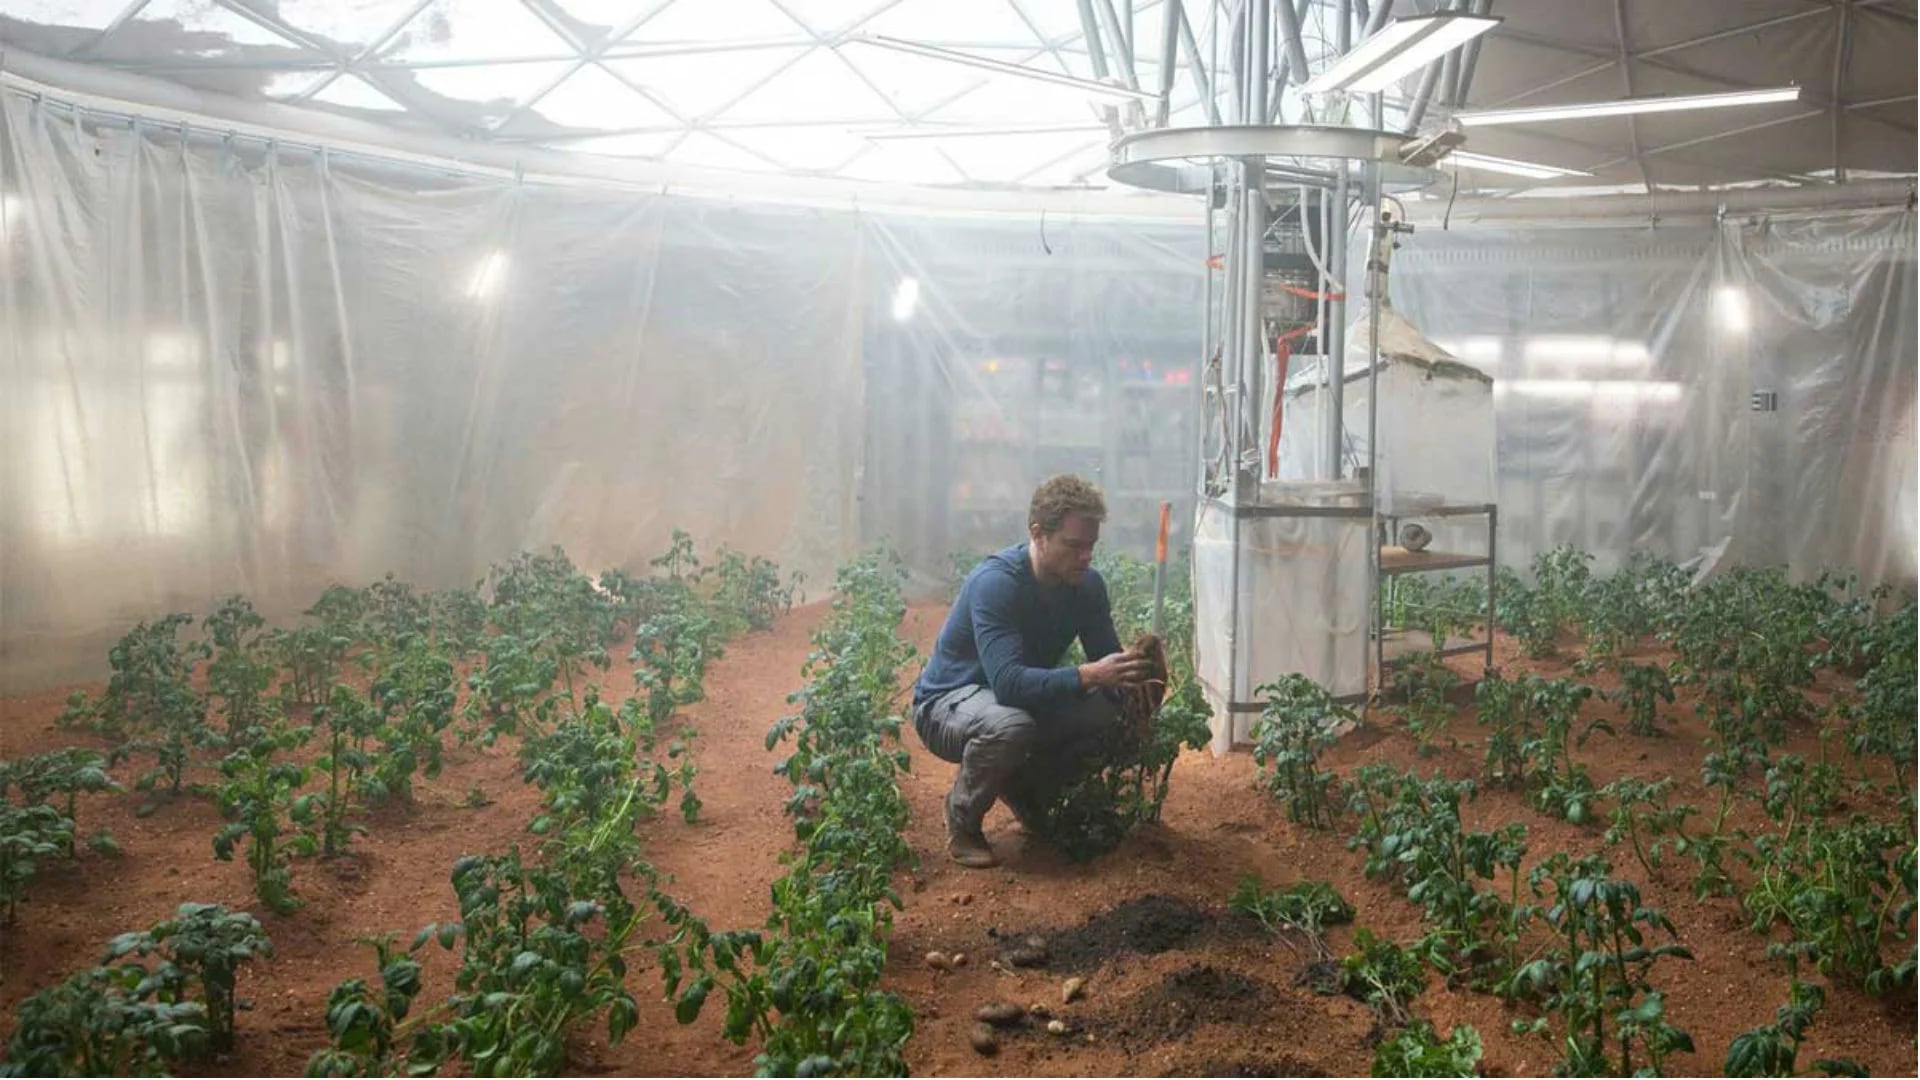 Matt Damon, en The Martian, cultivando alimentos en el espacio